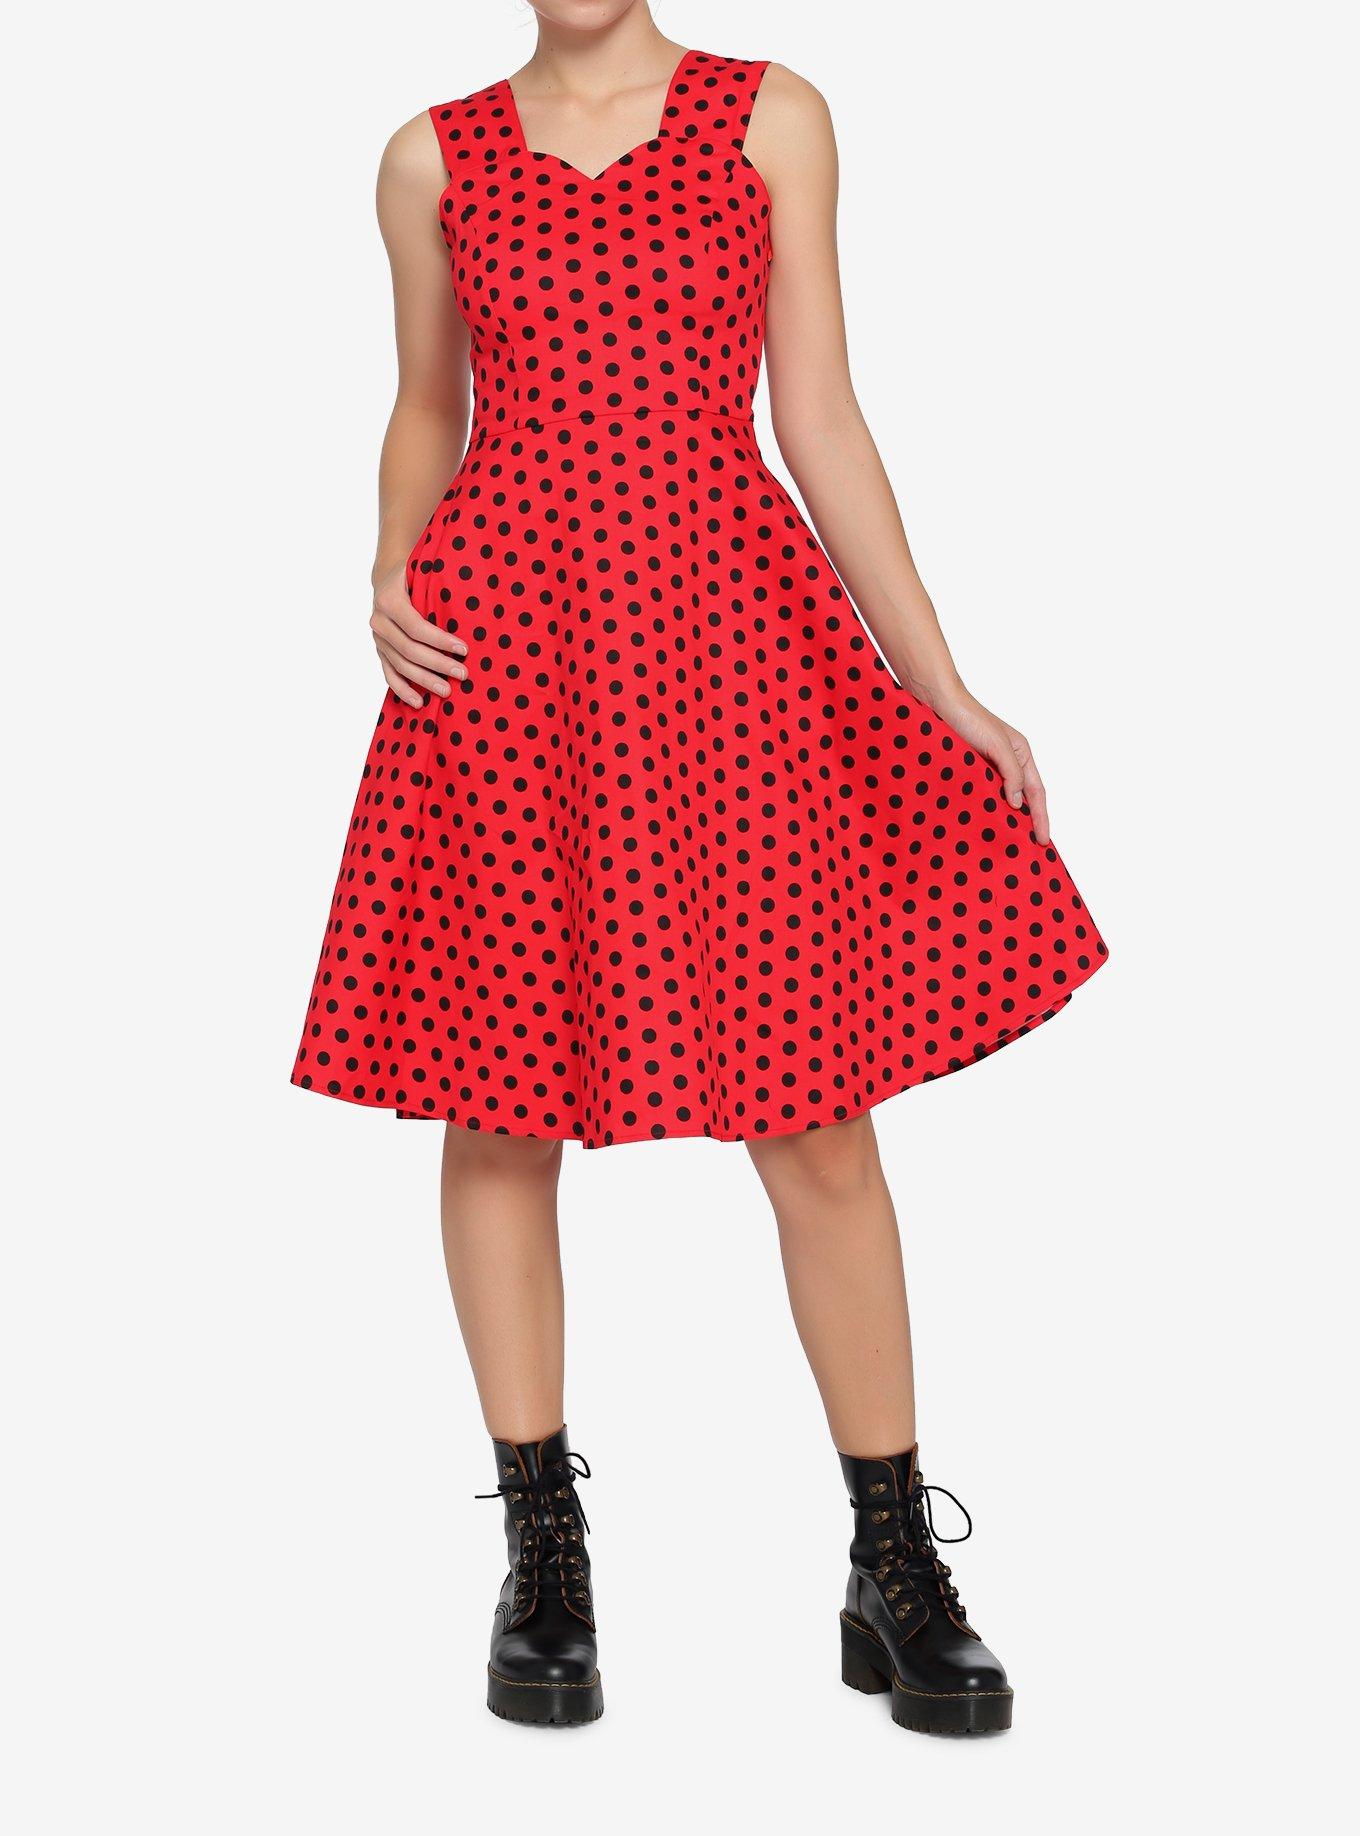 Red & Black Polka Dot Dress, RED, alternate